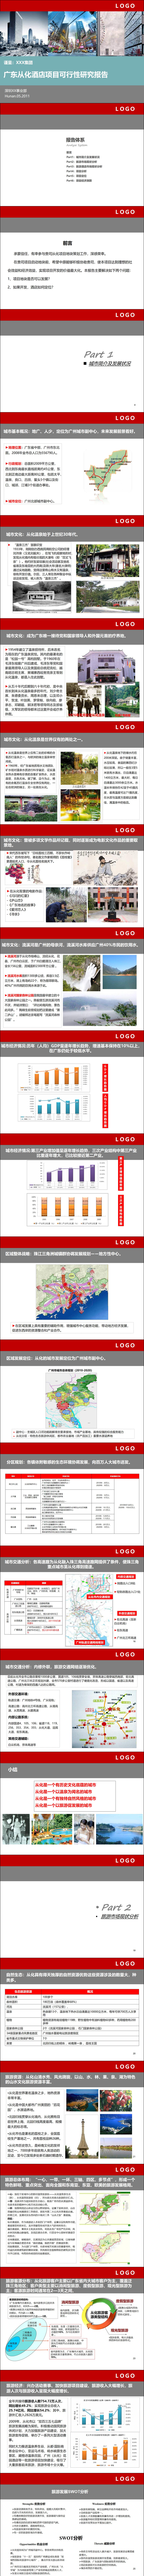 广东XX酒店项目可行性研究PPT报告模板